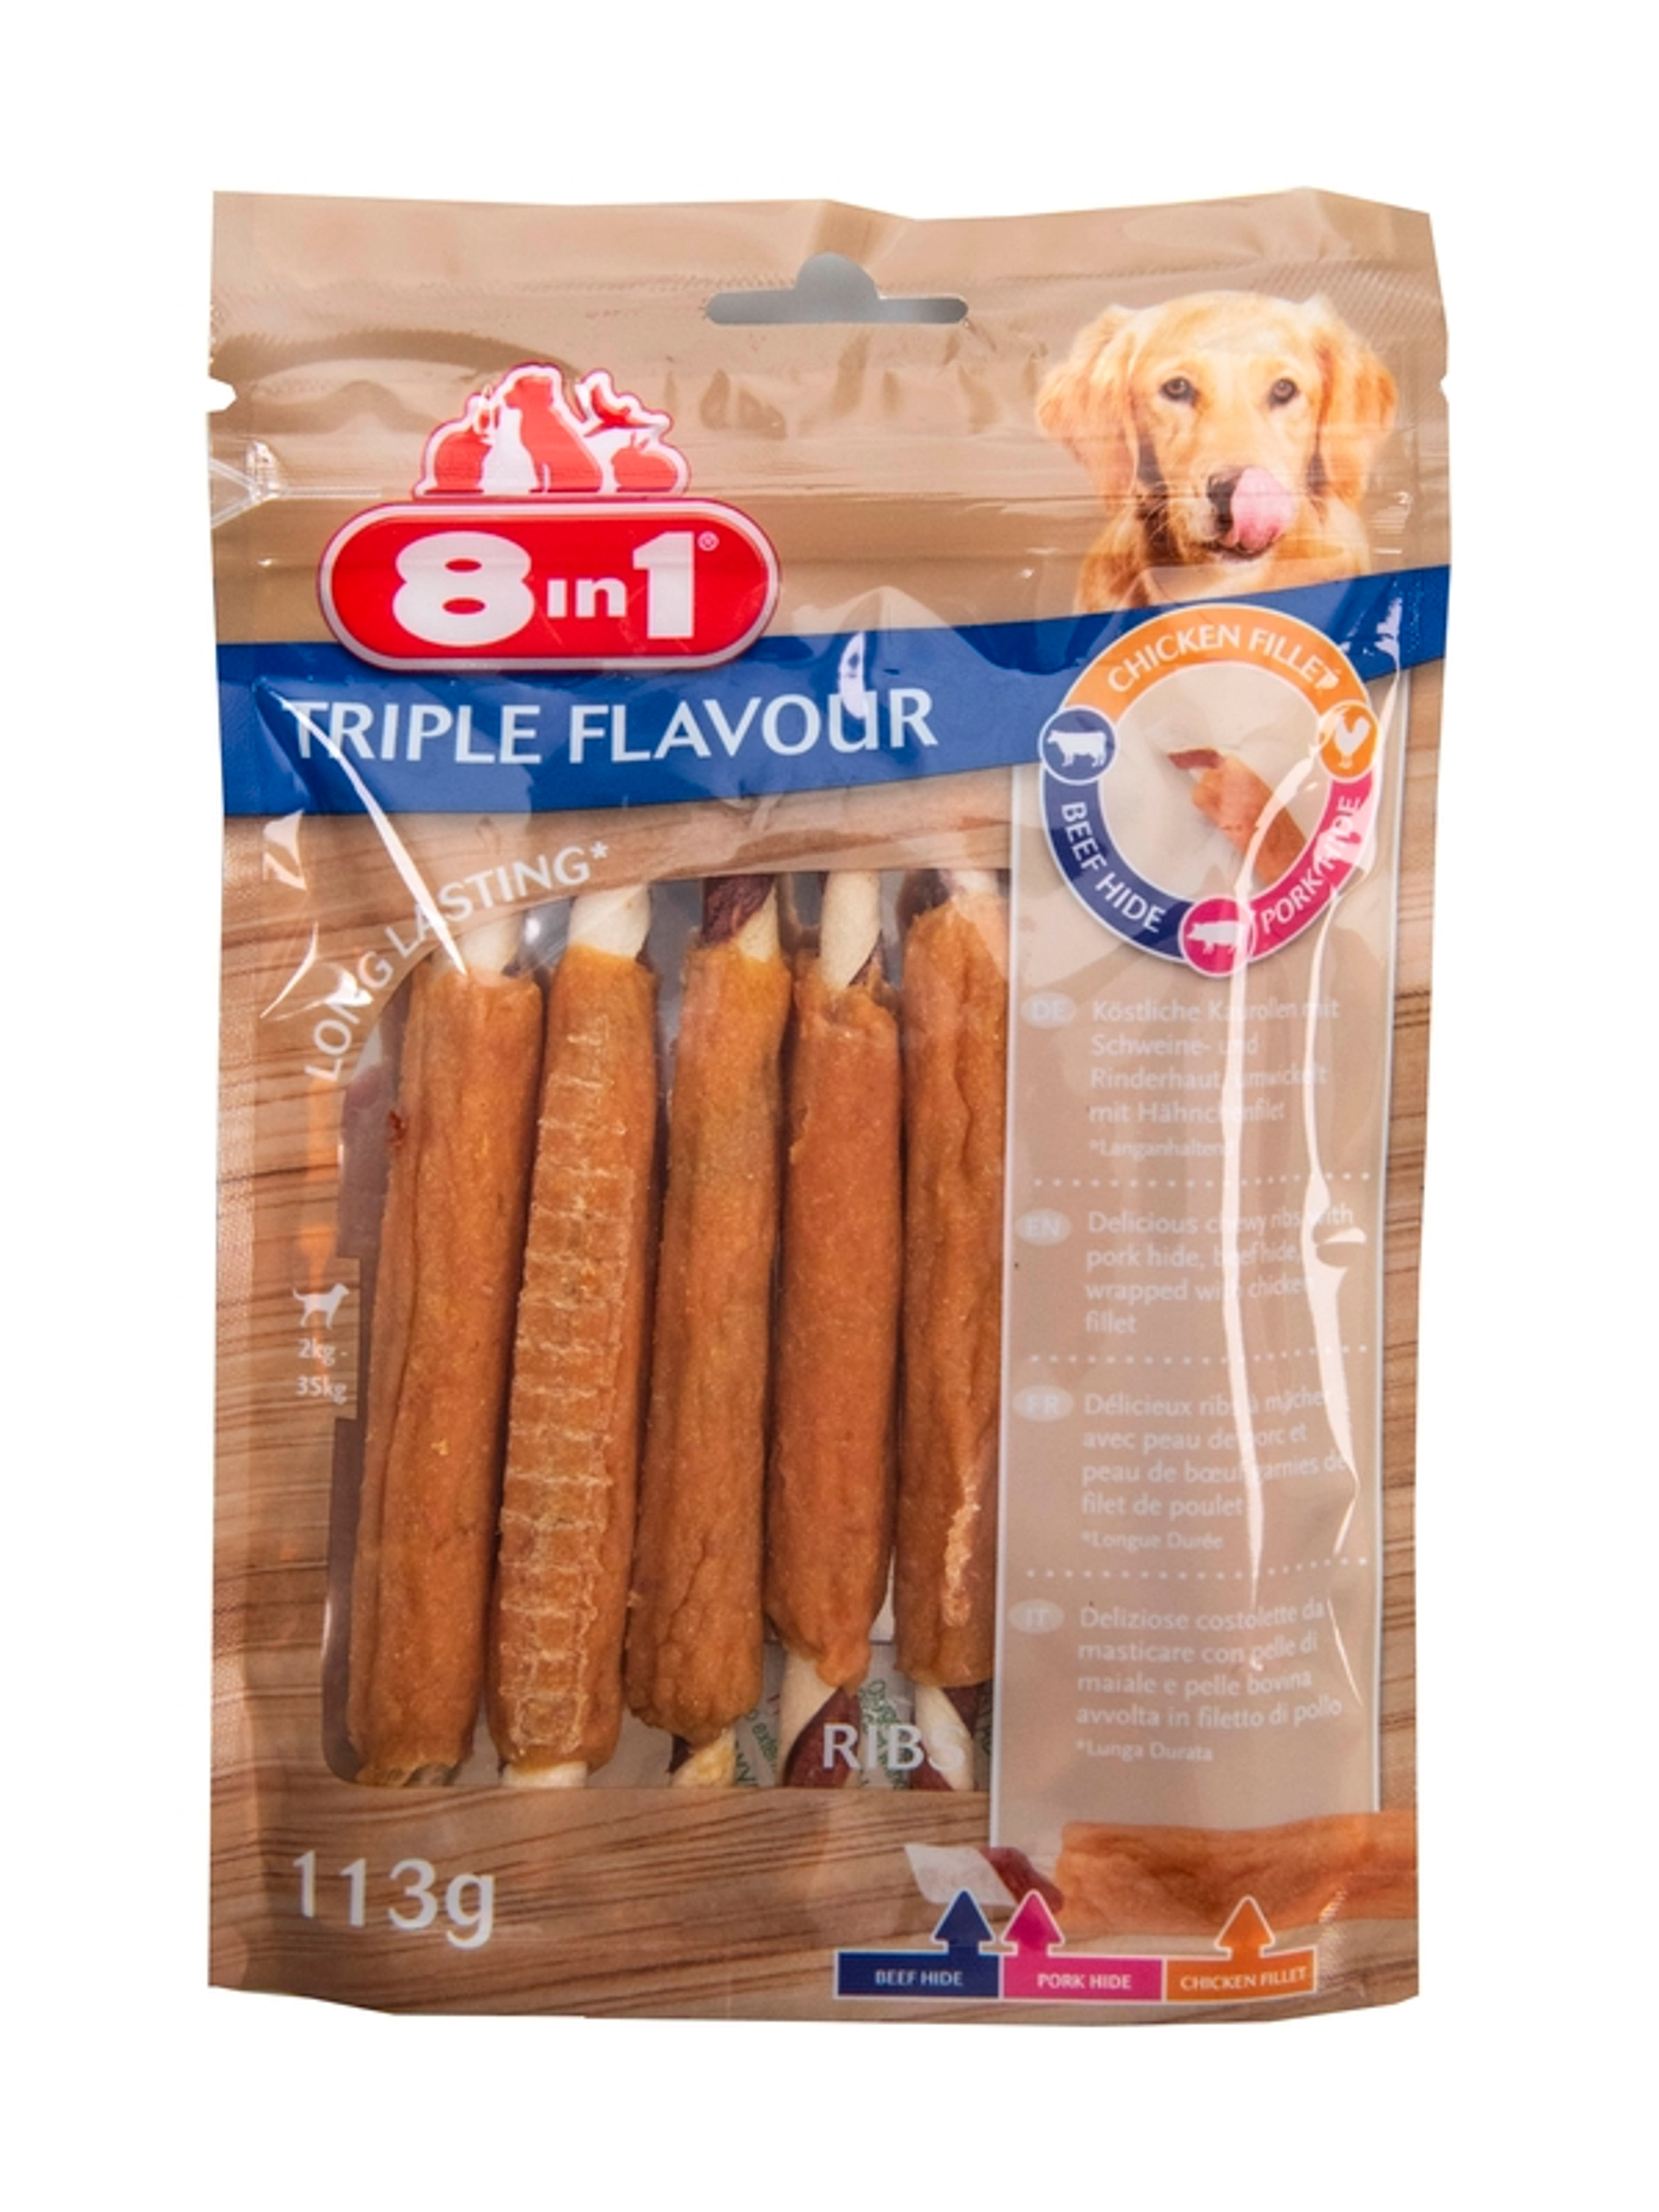 8 in 1 Triple Flavour jutalomfalat kutyáknak, ribs - 6 db